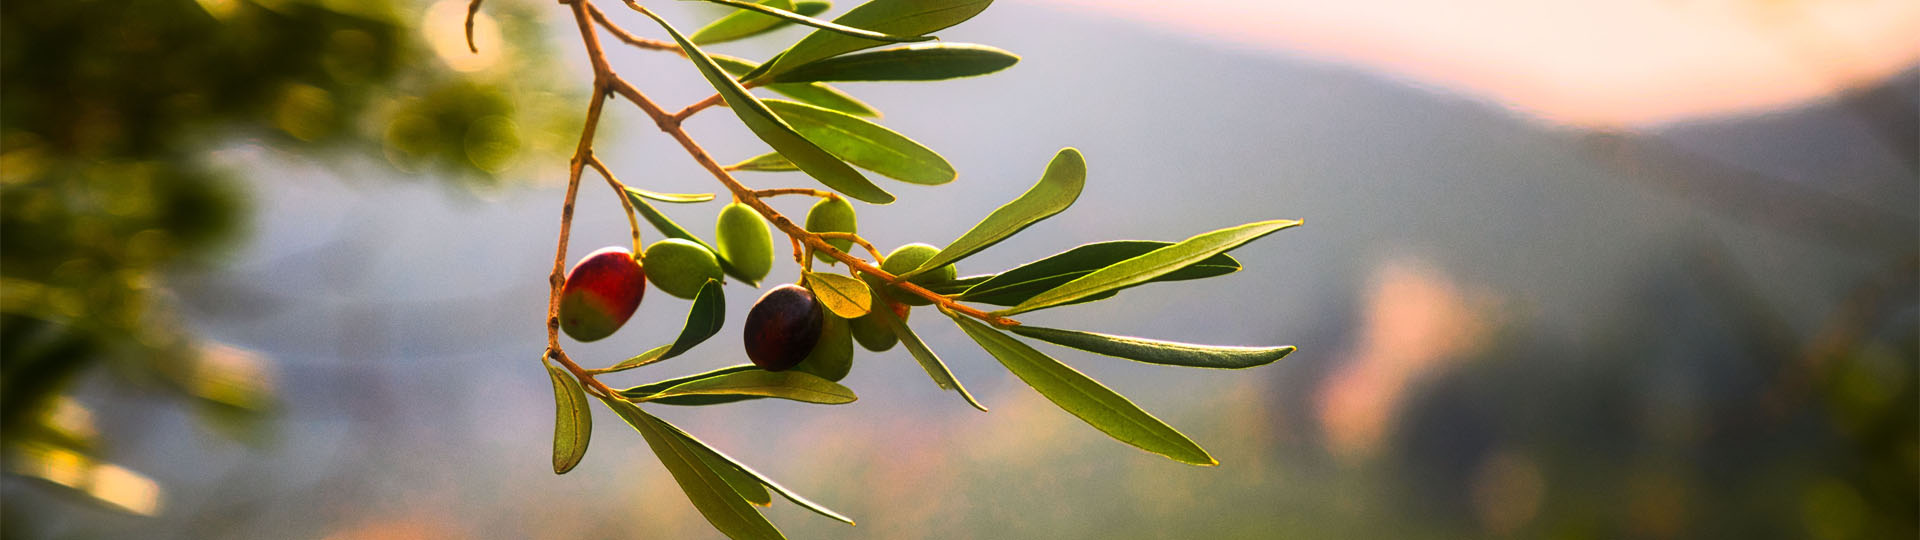 Oliven an einem Zweig